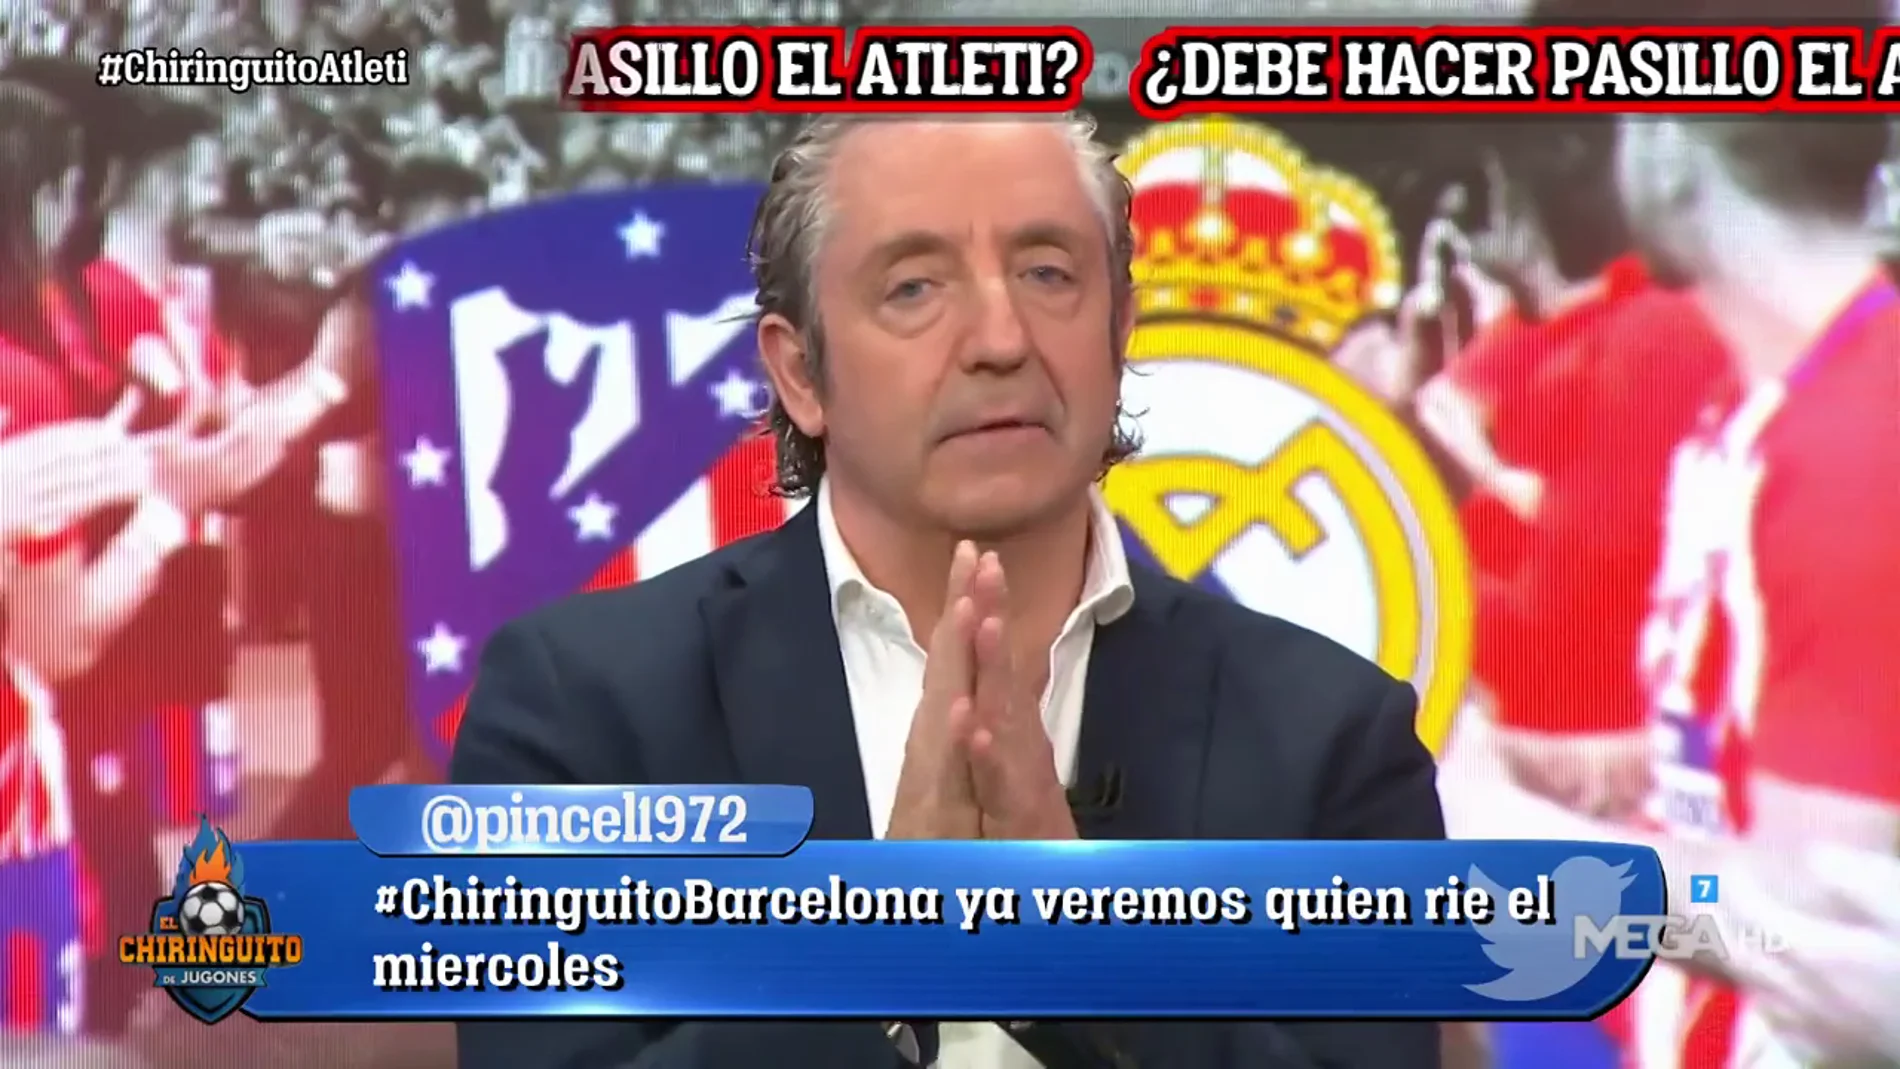 Josep Pedrerol: "El Atleti tiene que hacer el pasillo"